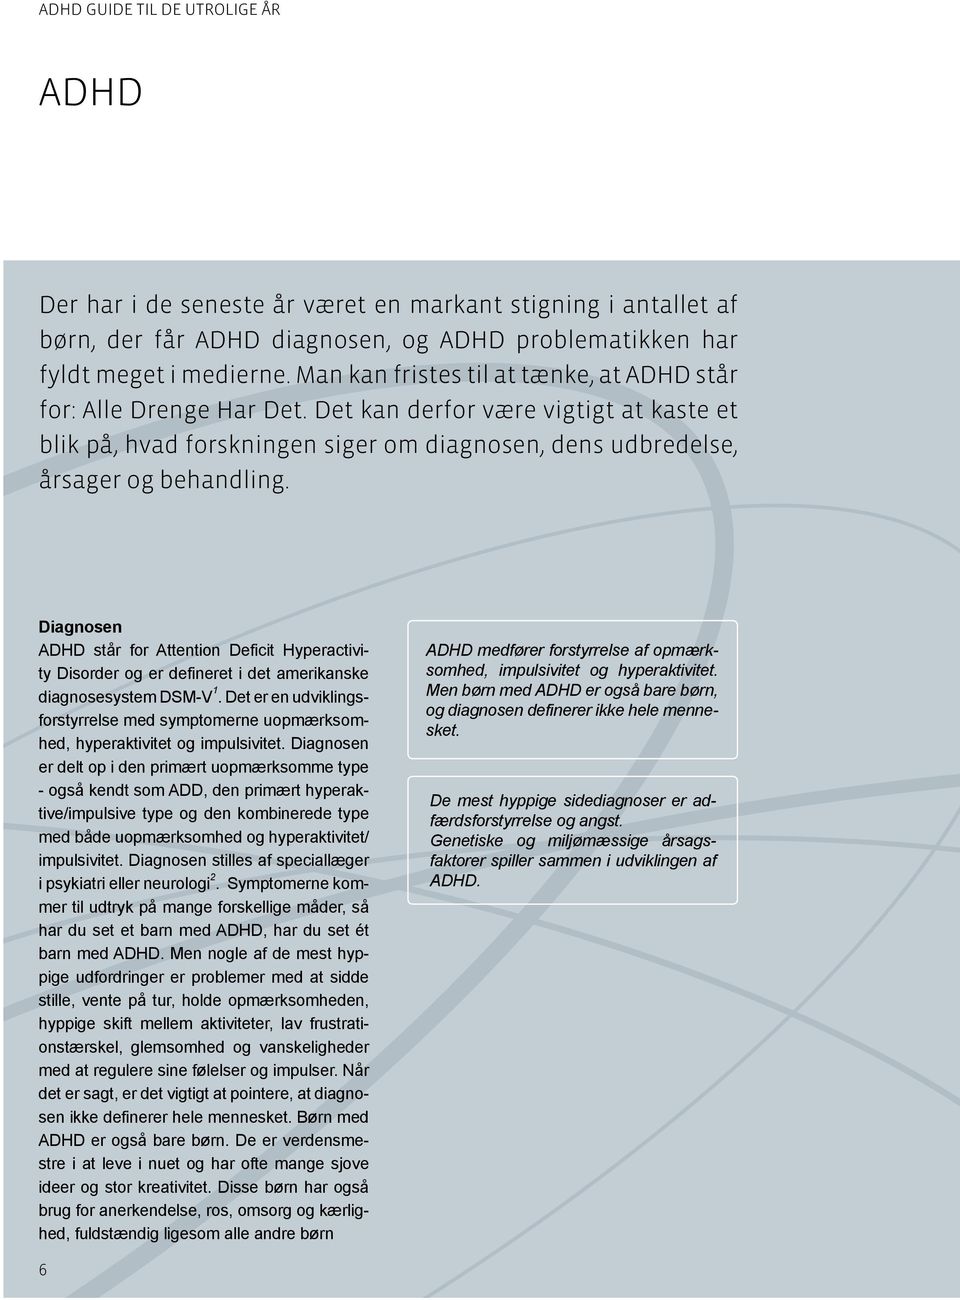 Diagnosen ADHD står for Attention Deficit Hyperactivity Disorder og er defineret i det amerikanske diagnosesystem DSM-V 1.